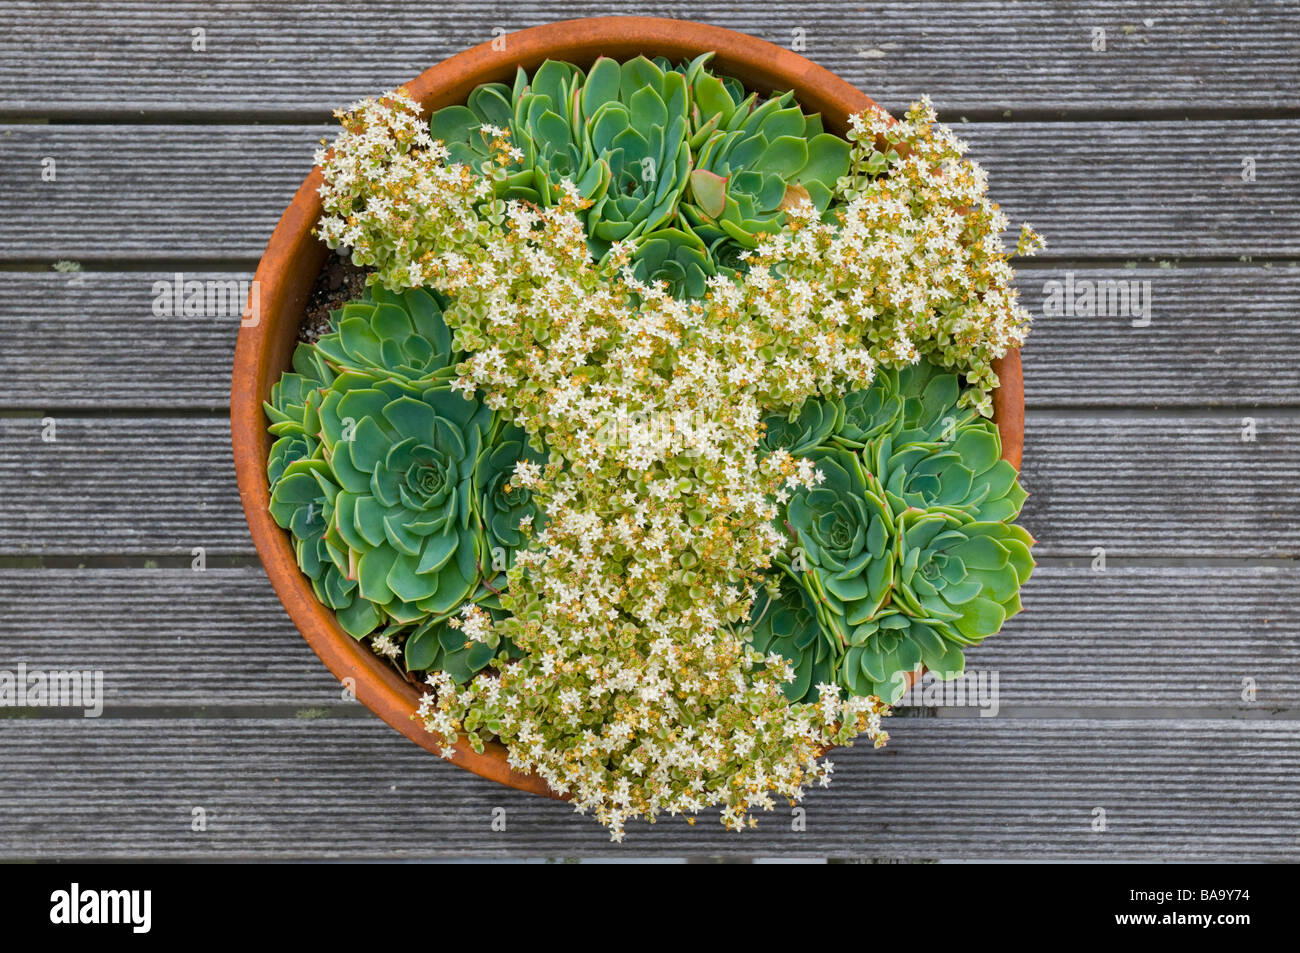 House leeks and crassula marginalia minuta Albamarginata succulents arranged in pattern in terracotta pot Stock Photo